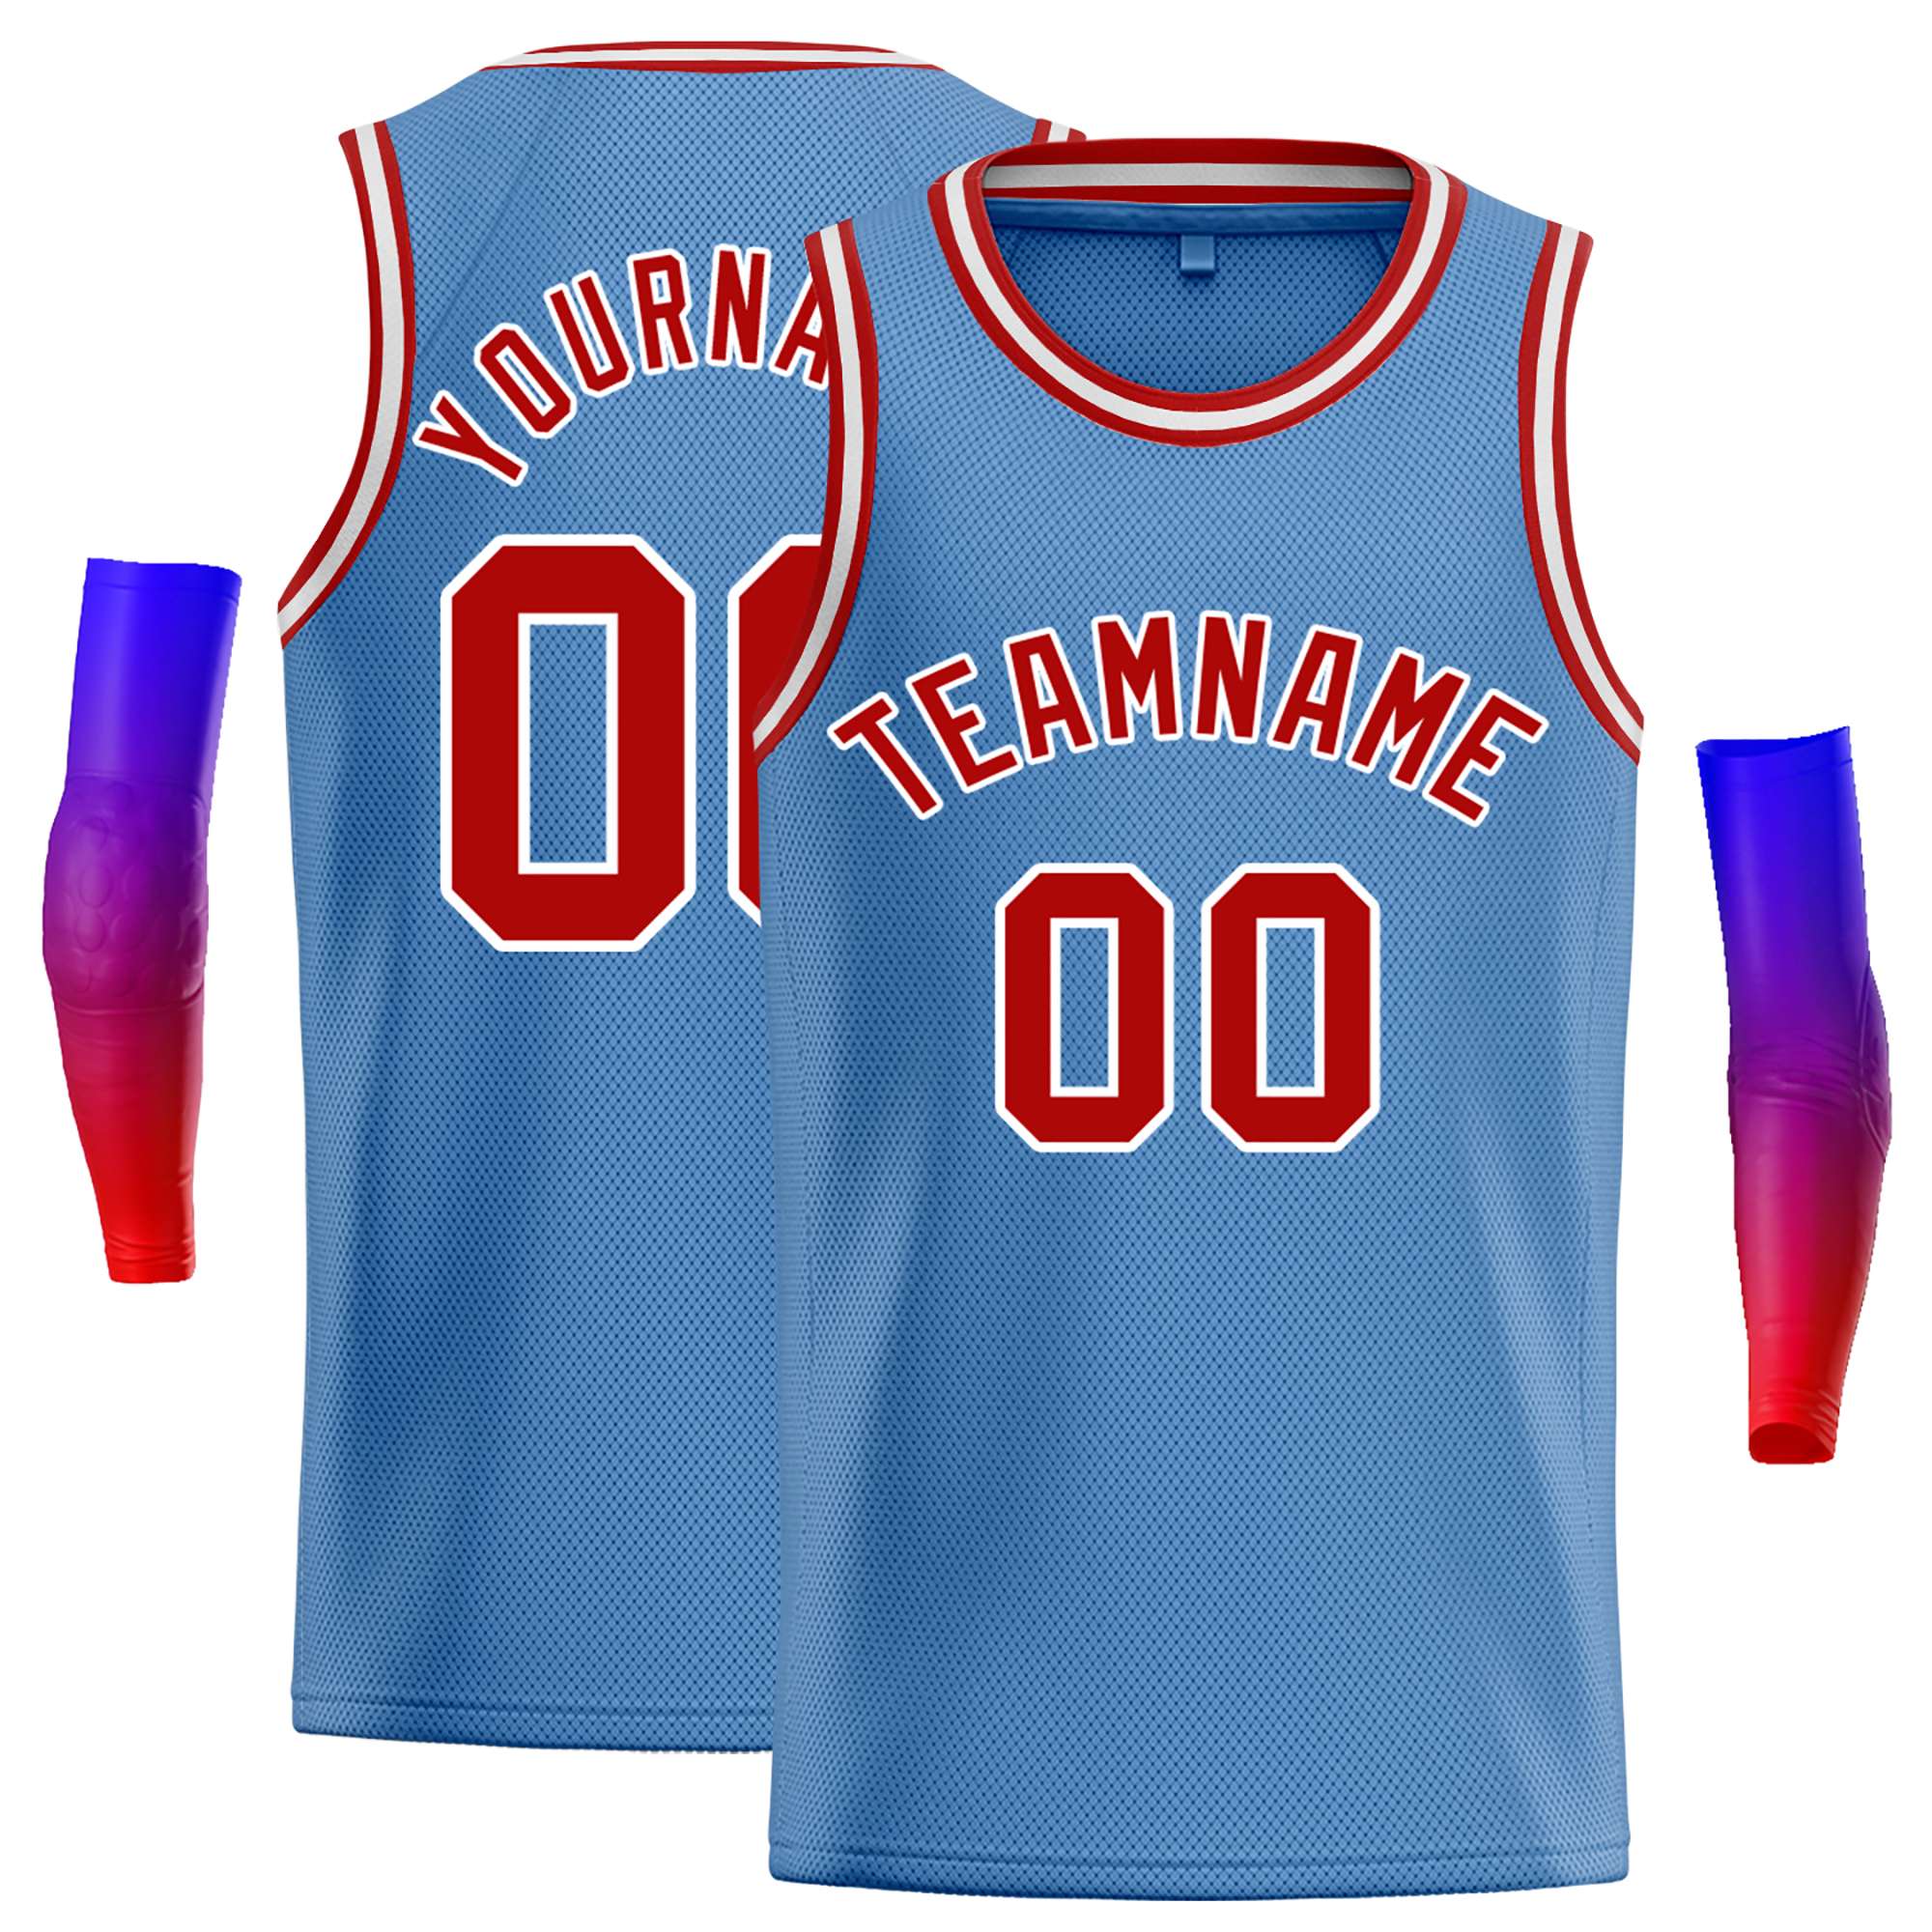 Chicago Bulls Basketball Jersey Designs  Best basketball jersey design, Jersey  design, Basketball clothes